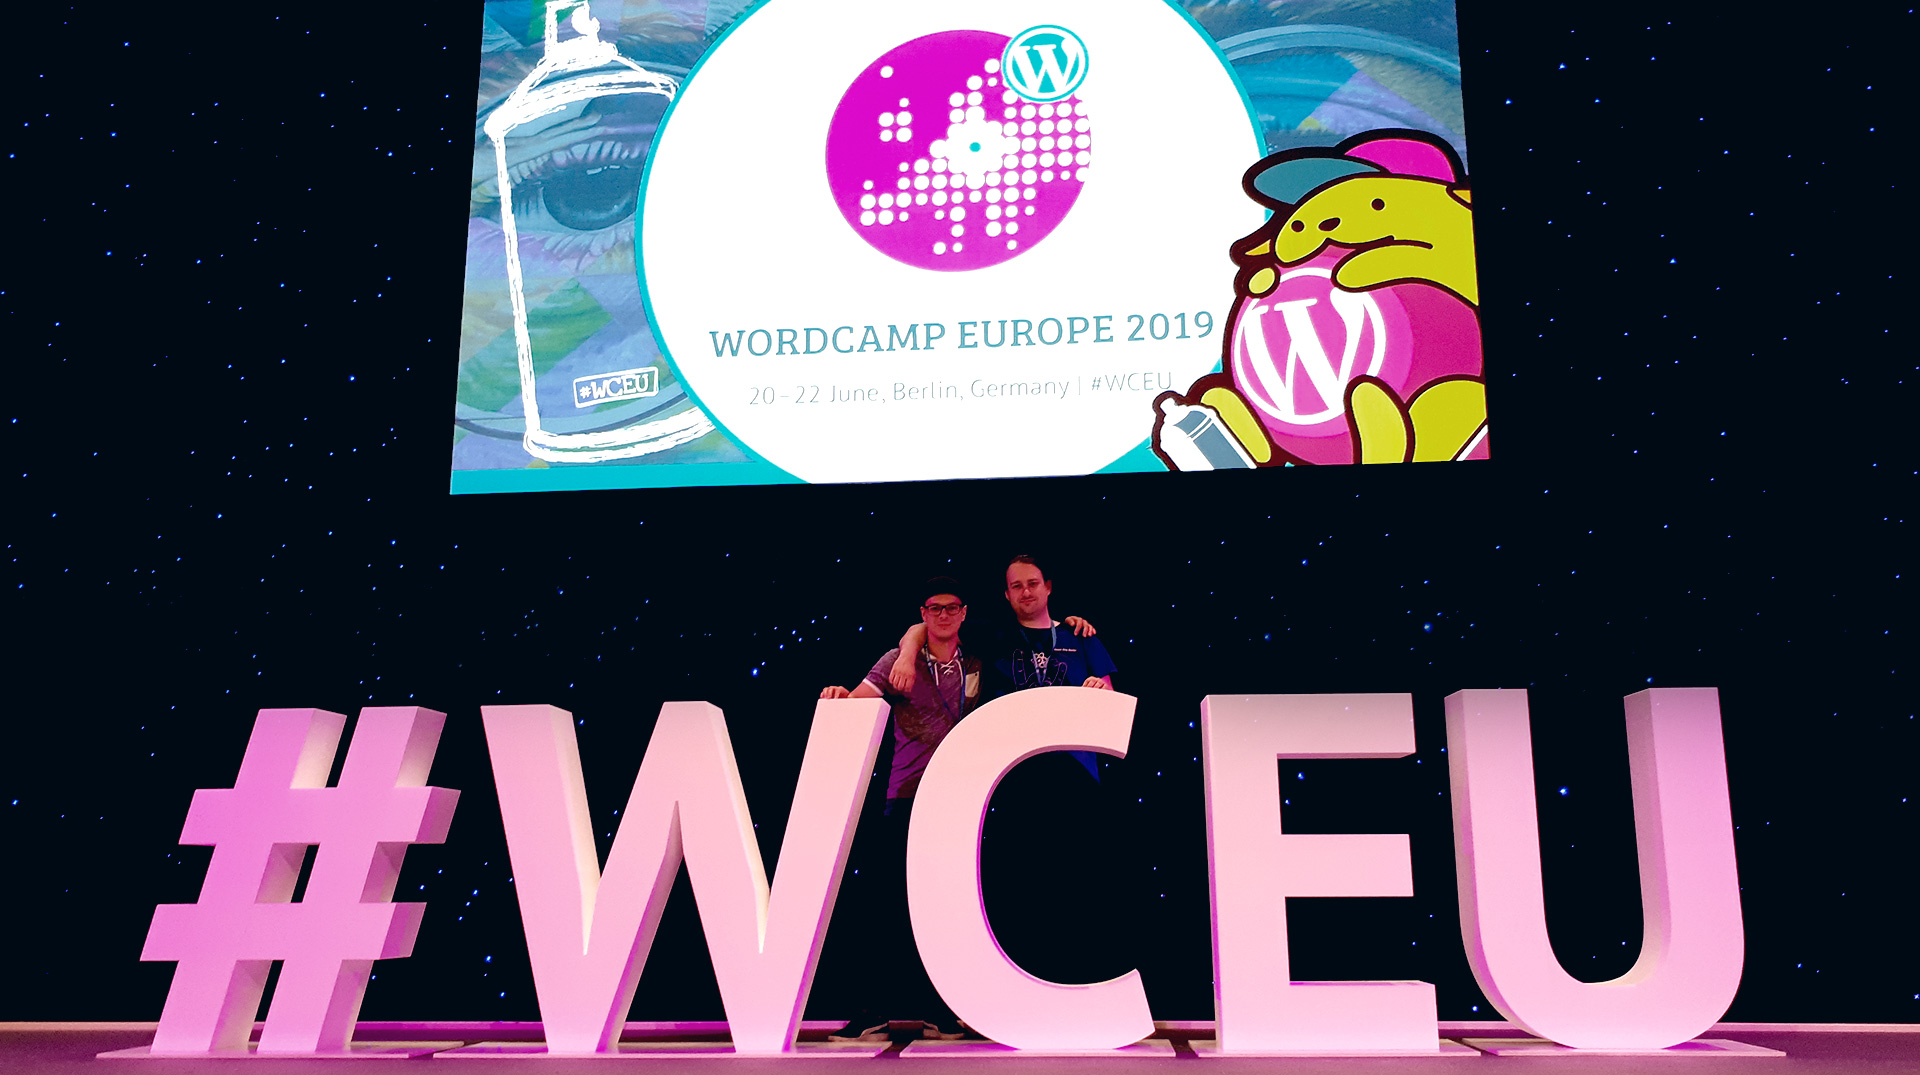 Mitarbeiter der Wordpress Agentur 3m5. beim Wordcamp Europe 2019